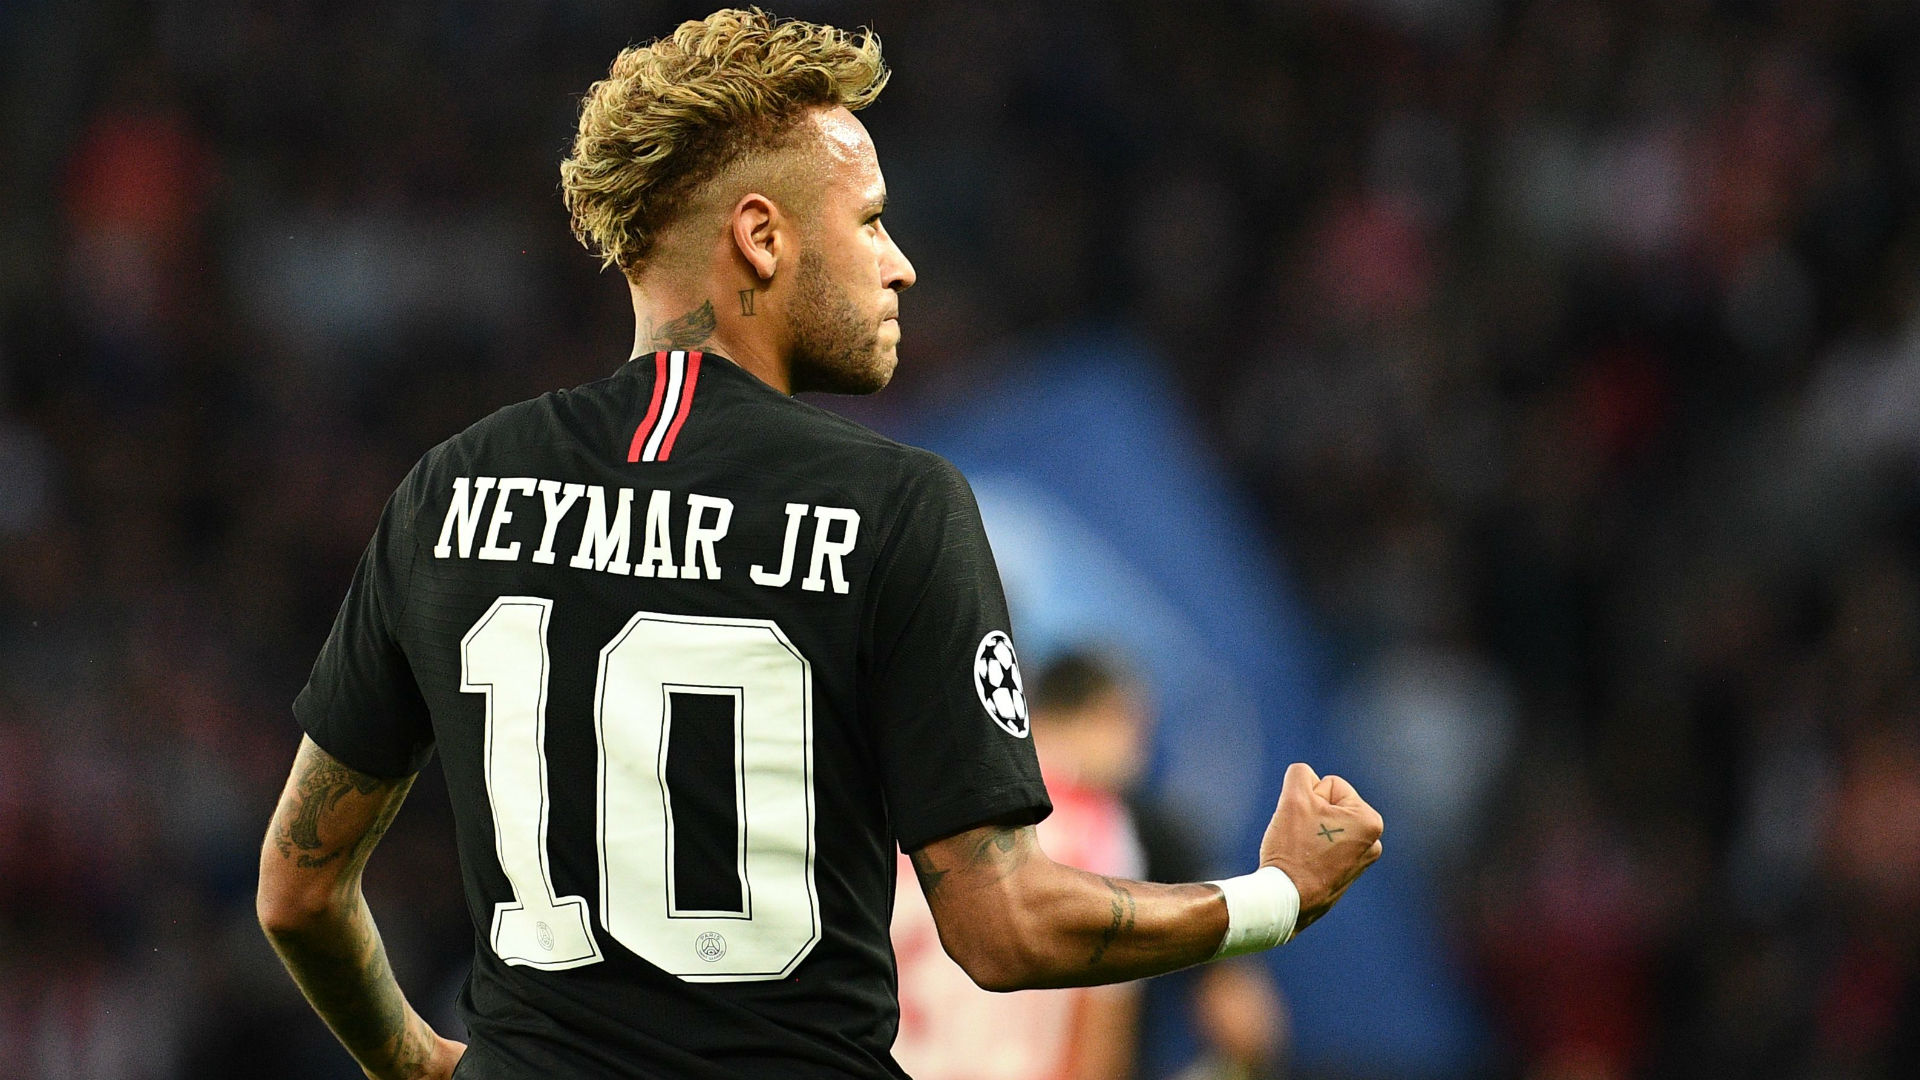 Barcelona - Neymar tÃ¡i há»£p: Khi táº¥t cáº£ cÃ¹ng vui! - BÃ³ng ÄÃ¡